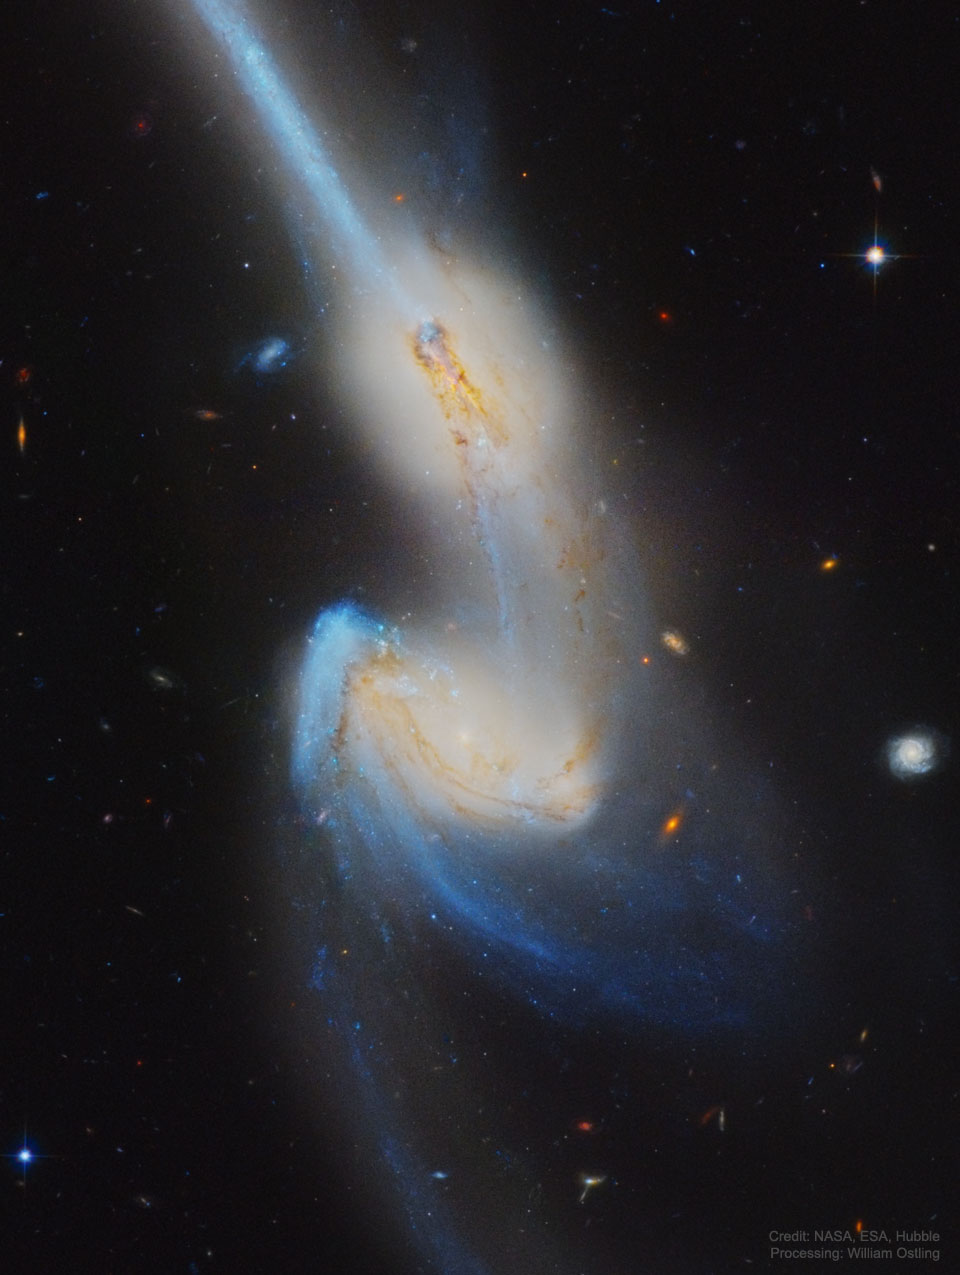 Zdjęcie przedstawia wykonane przez Teleskop Hubble'a zdjęcie zderzających się galaktyk NGC 4676, znanych jako Myszy, dzięki swym długim, gwiezdnym ogonom.
Więcej szczegółowych informacji w opisie poniżej.